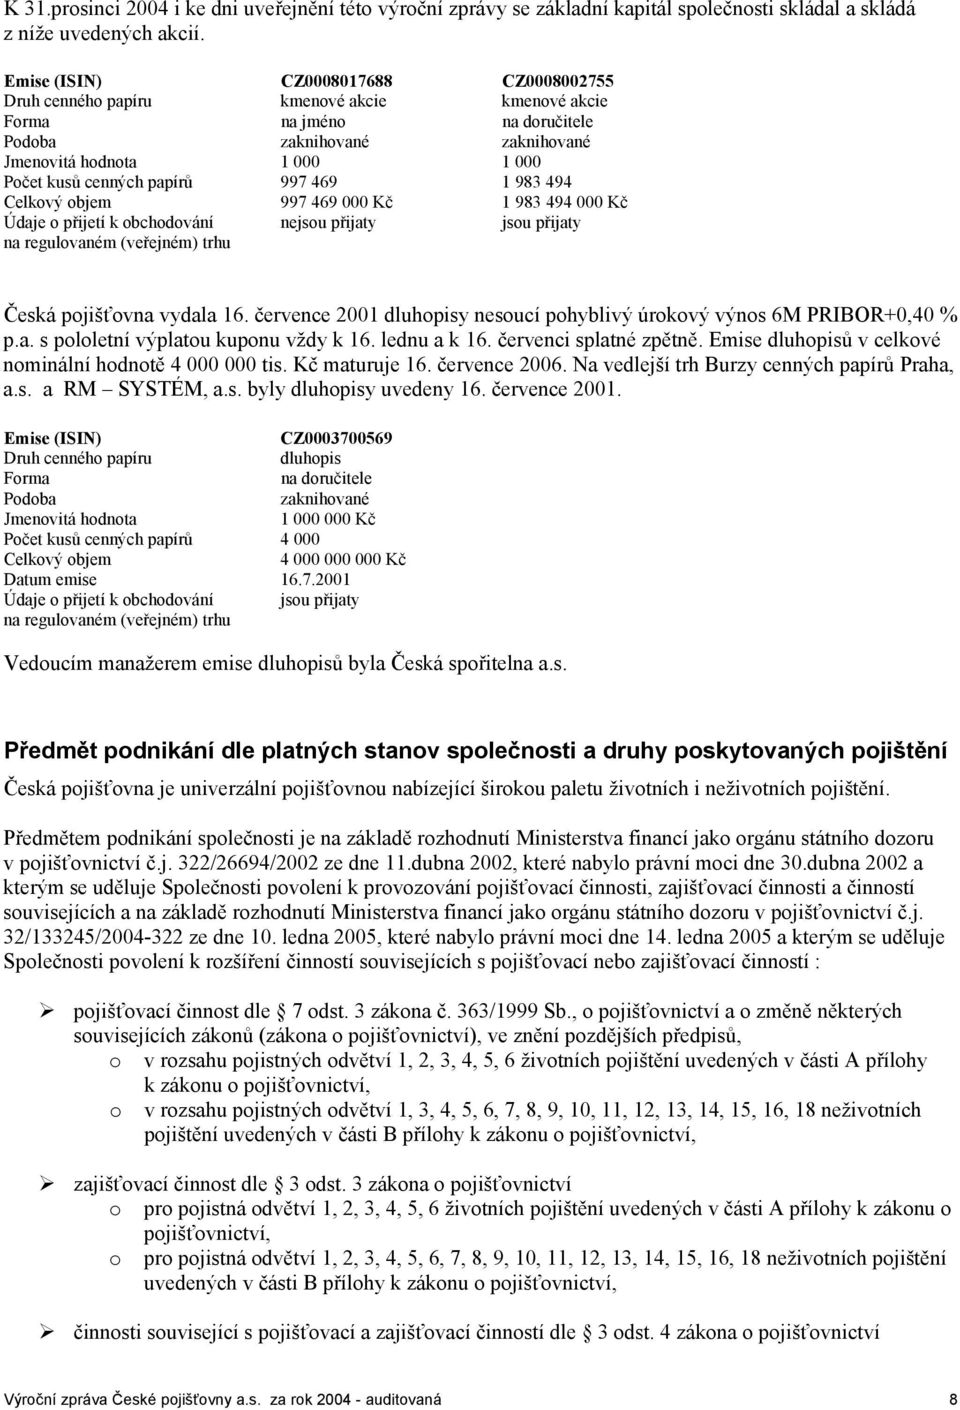 papírů 997 469 1 983 494 Celkový objem 997 469 000 Kč 1 983 494 000 Kč Údaje o přijetí k obchodování nejsou přijaty jsou přijaty na regulovaném (veřejném) trhu Česká pojišťovna vydala 16.